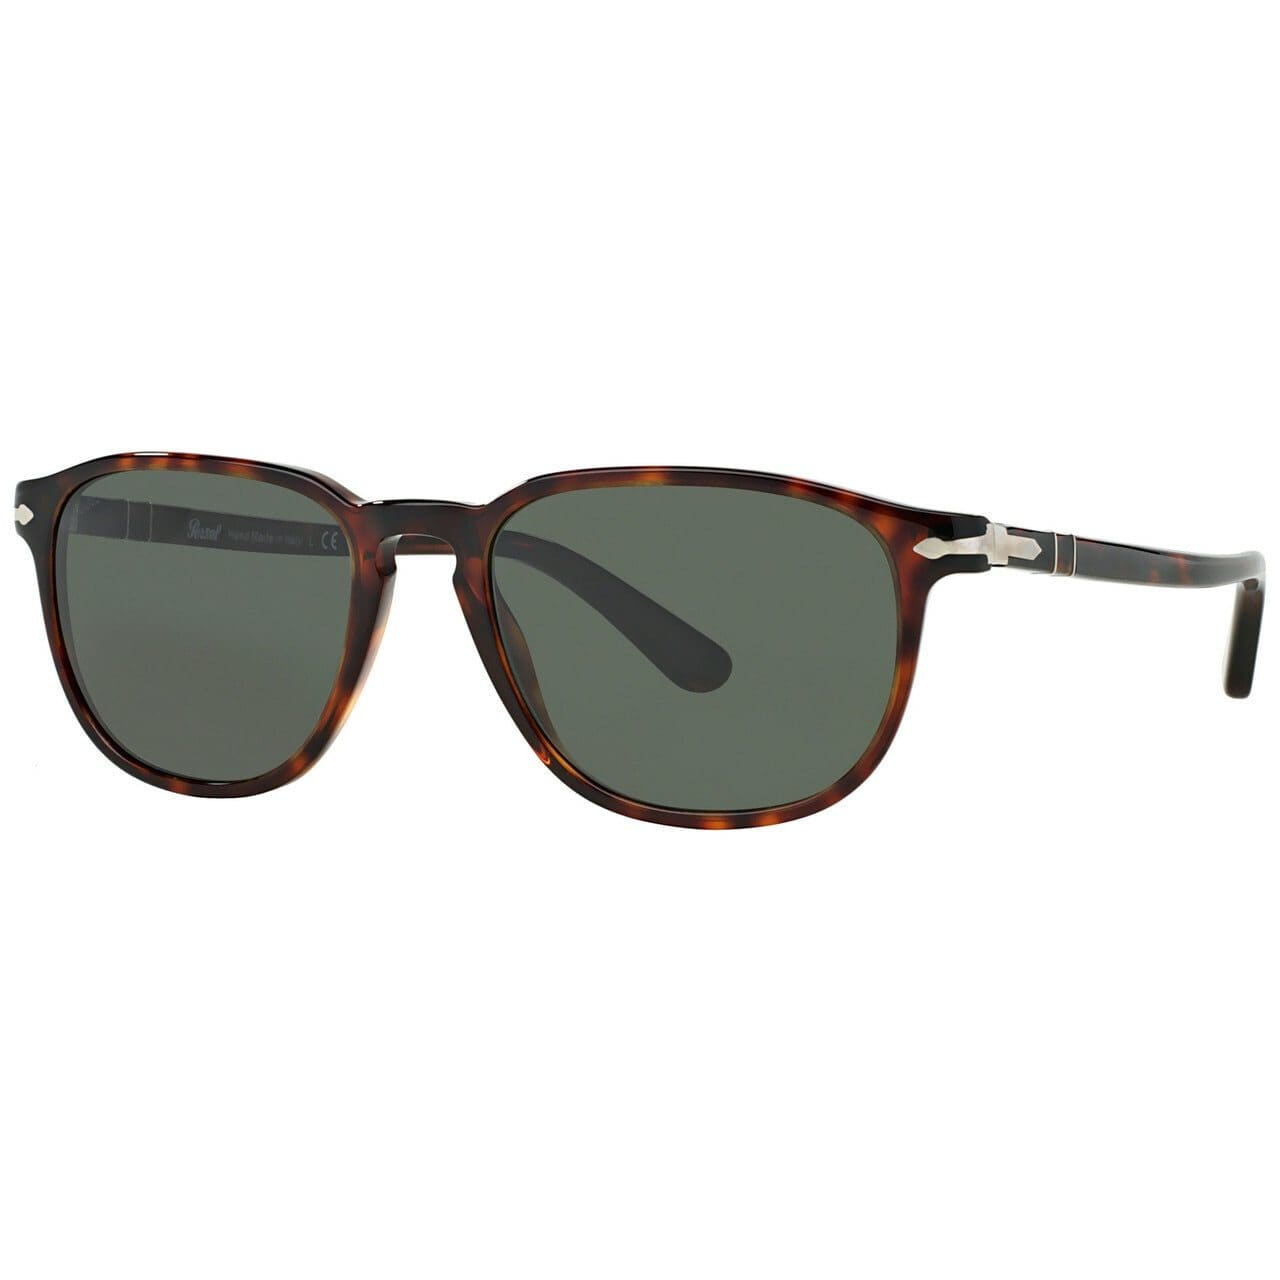 Persol 3019S Full Rim Acetate Unisex Folding Sunglasses